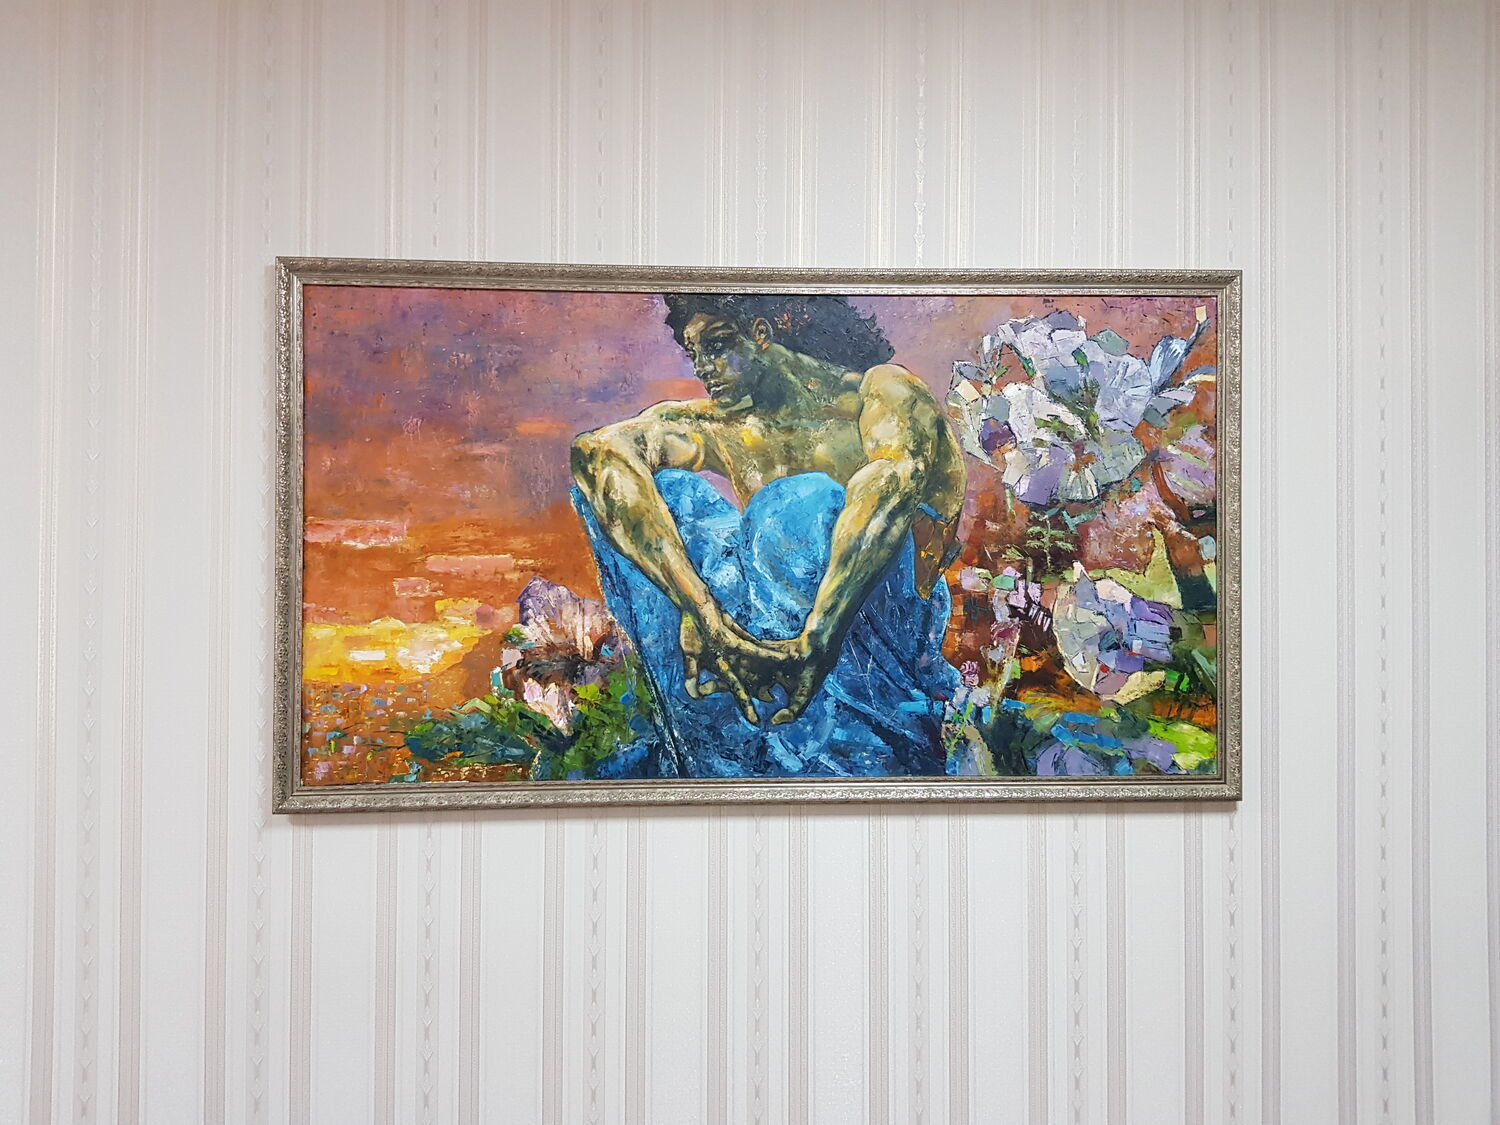 Фото №2 к отзыву покупателя Rustam Isakov о товаре Картина. Демон сидящий. Ручная копия маслом на холсте, 150х80 см.